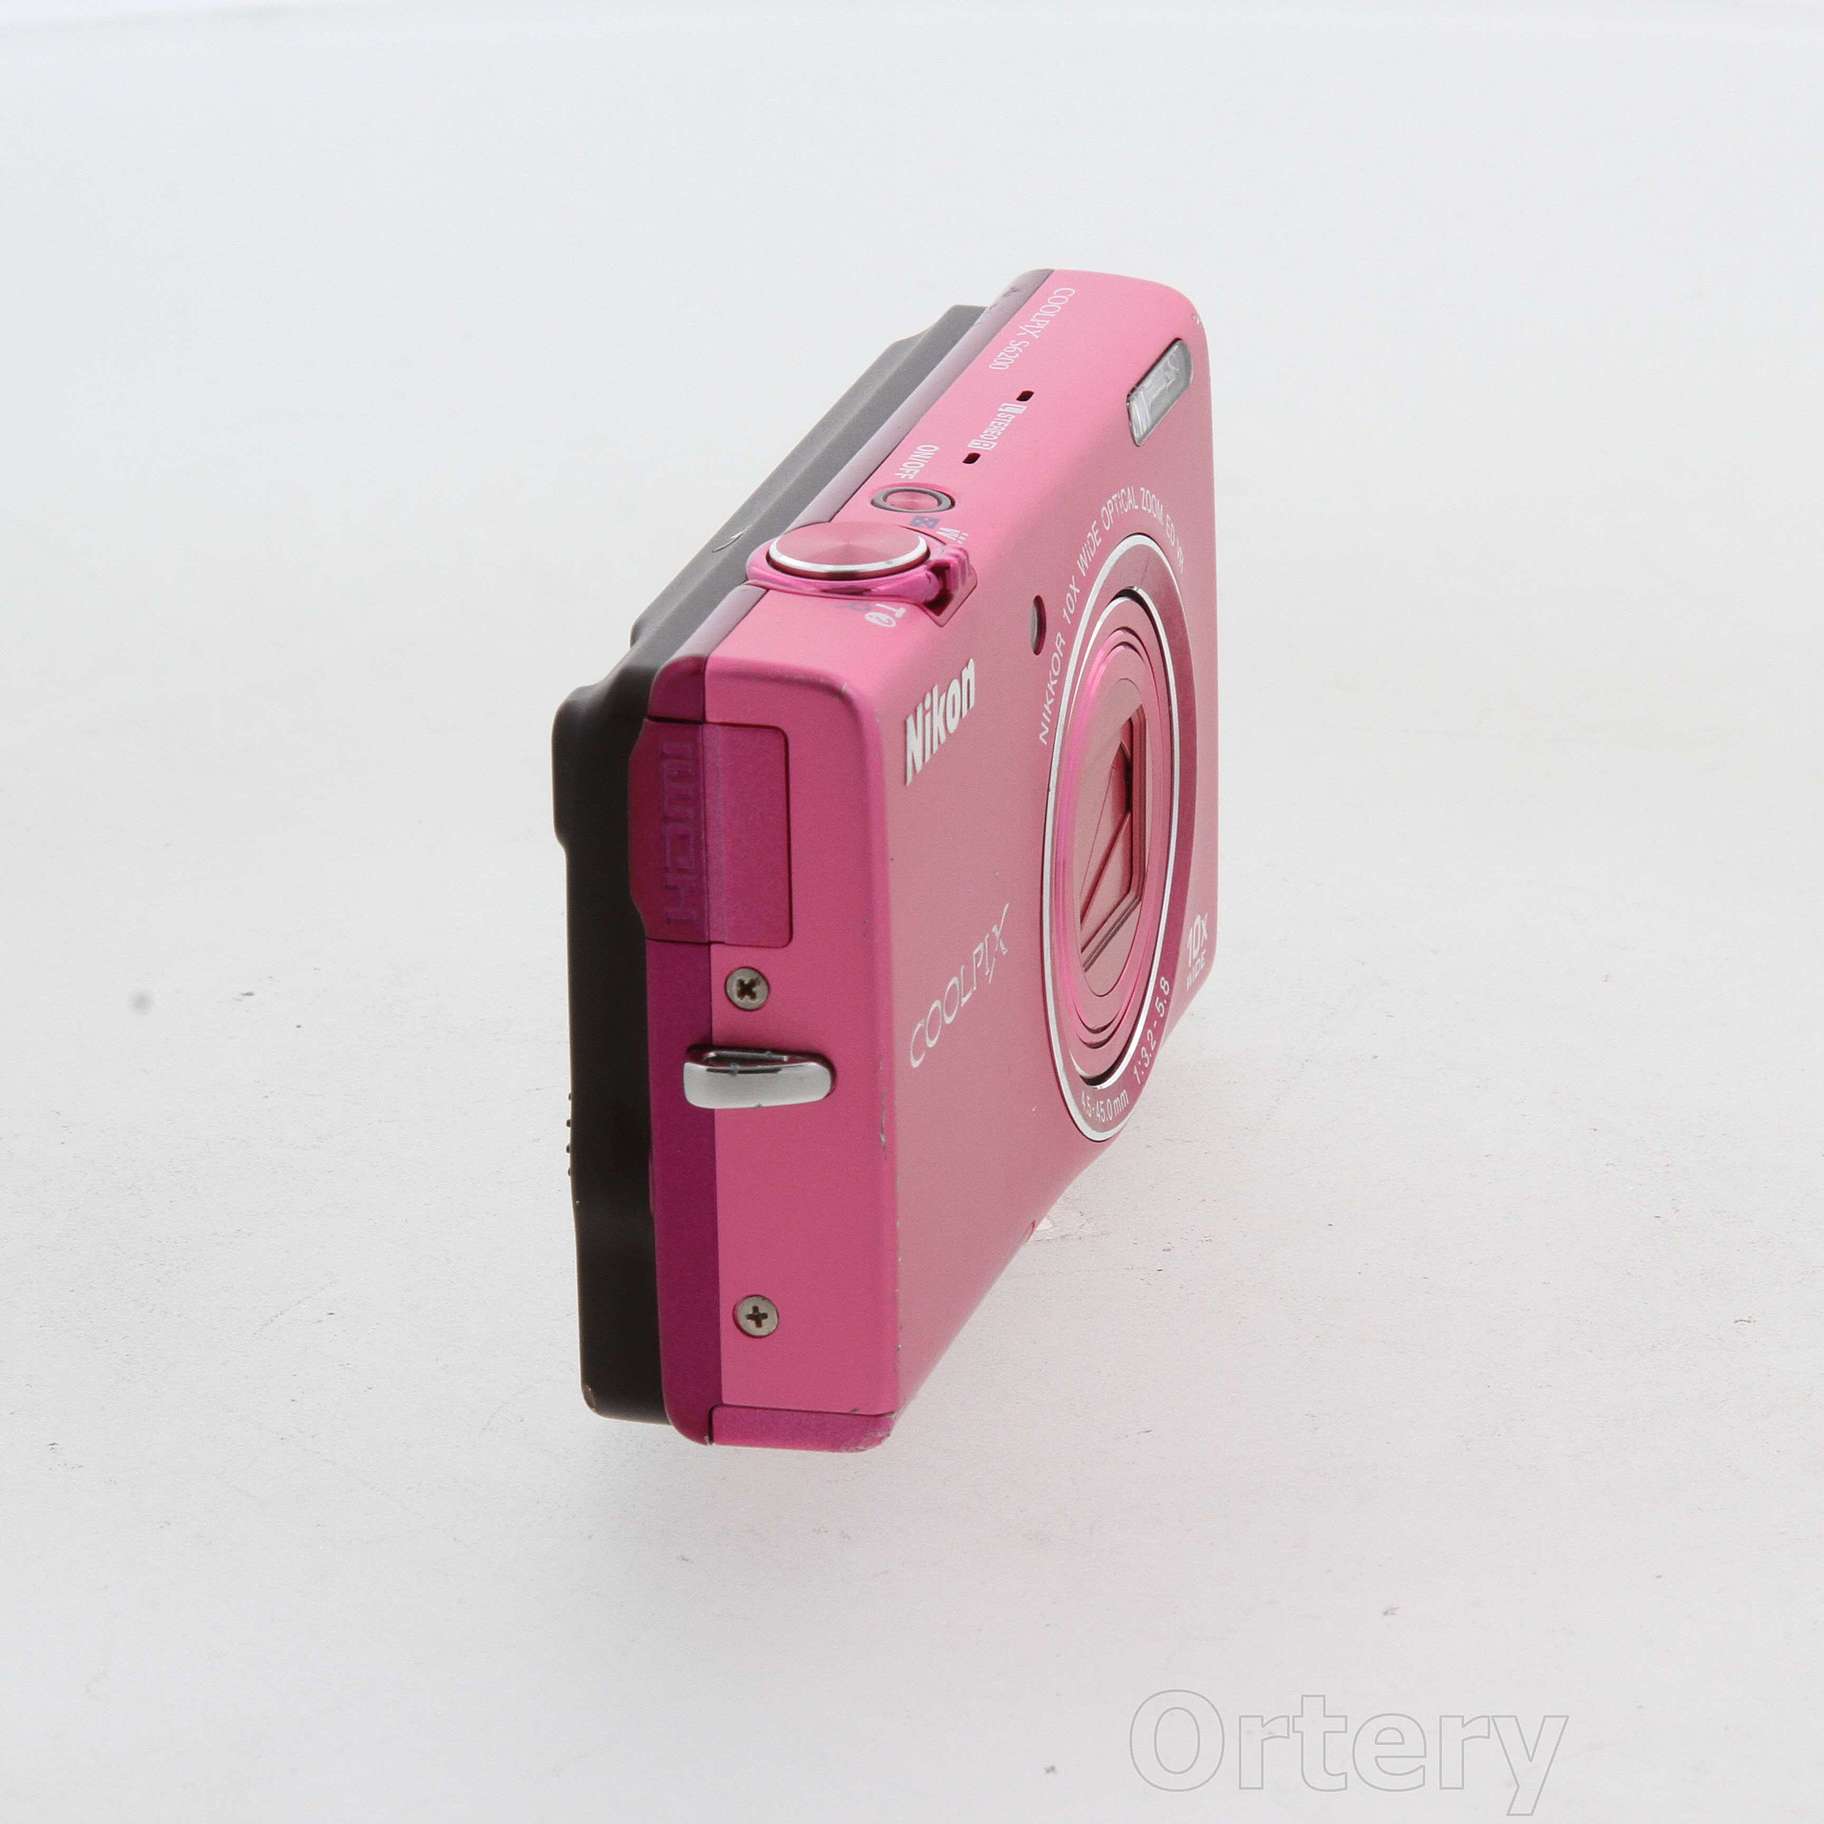 Nikonニコン COOLPIX S6200 デジタルカメラ チェリーピンク⚫︎ストラップ